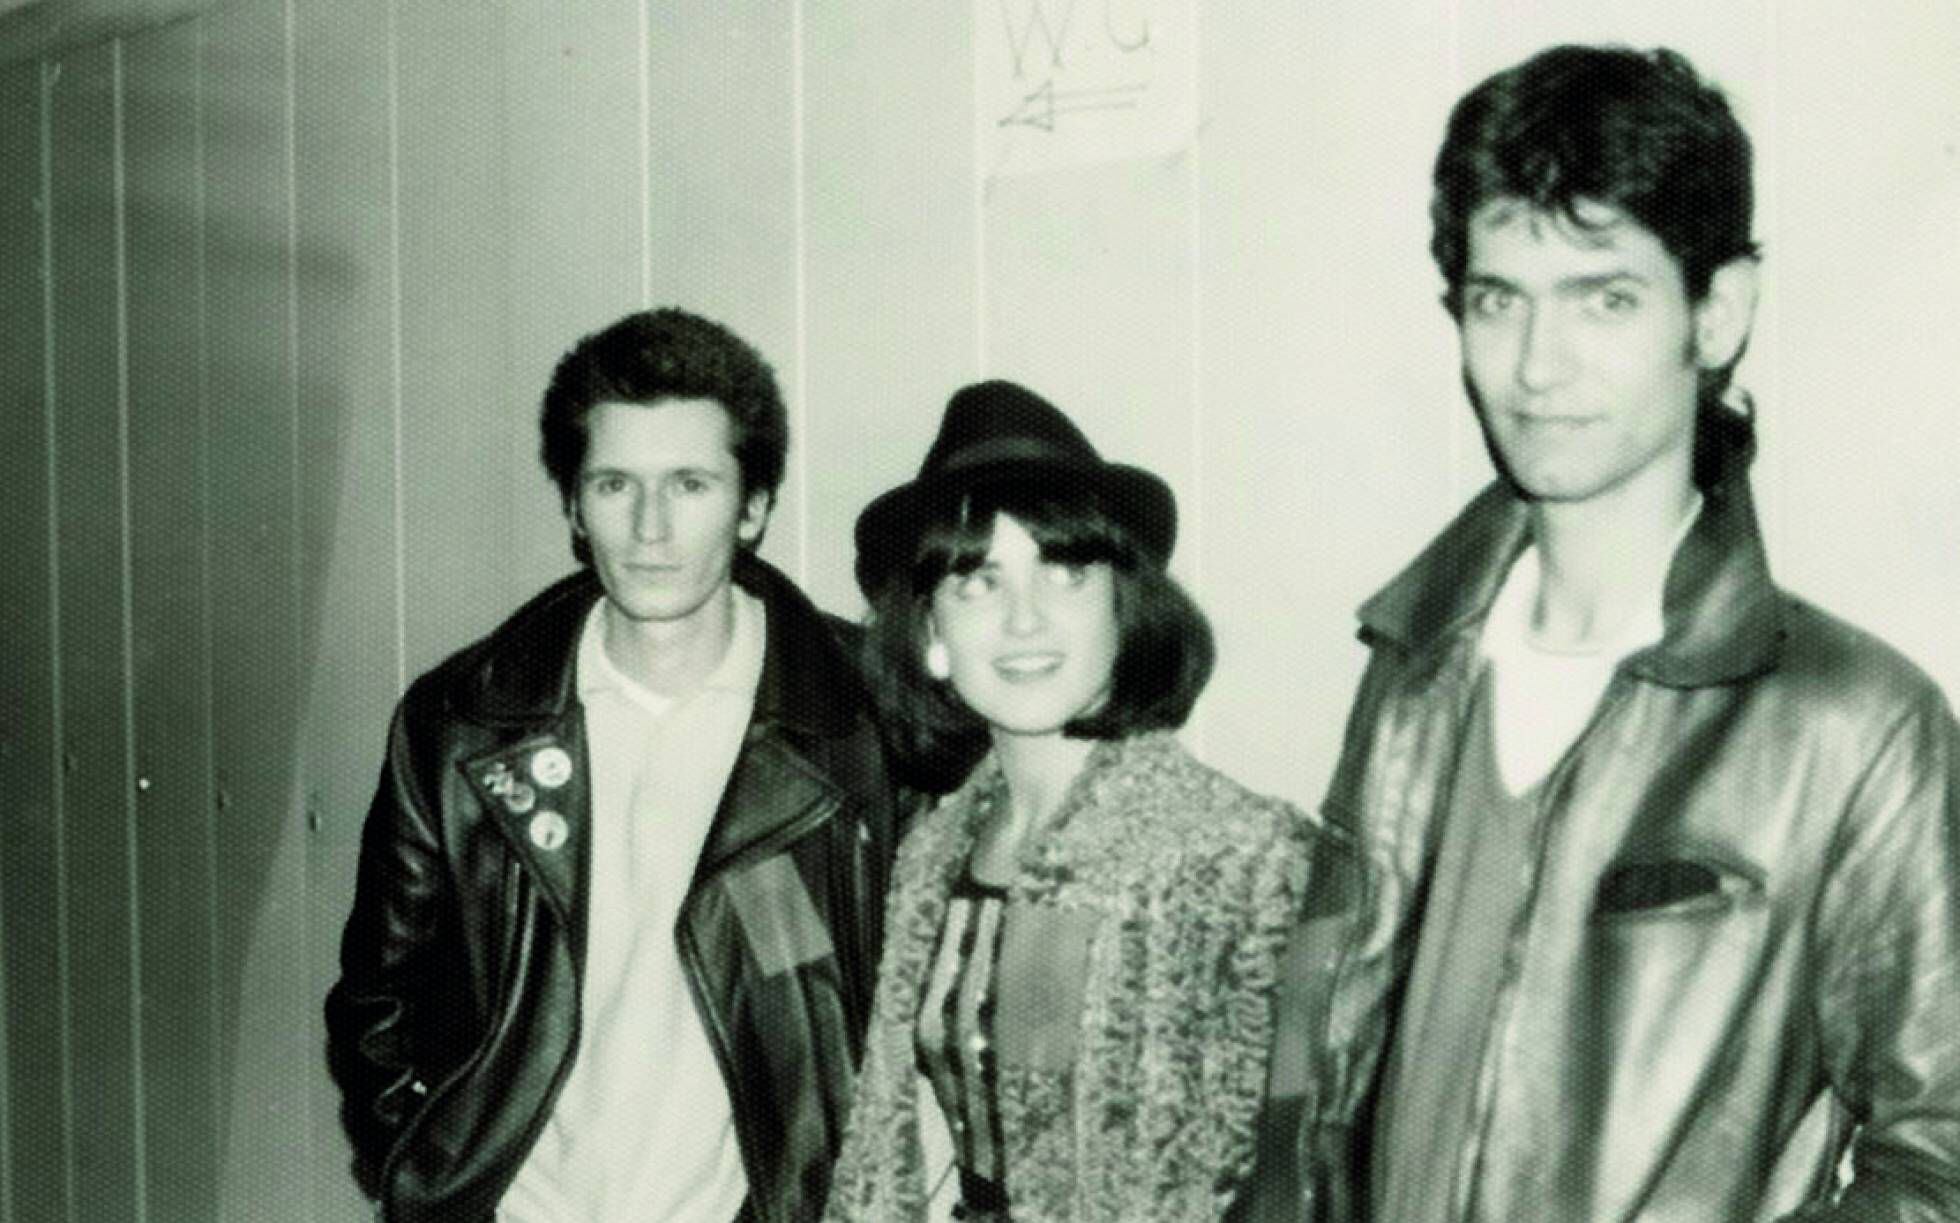 Nacho Canut, Ana Curra y Carlos Berlanga (los tres miembros de Los Pegamoides) en los camerinos del concierto homenaje a Canito, en la madrileña Escuela de Caminos, febrero de 1980.